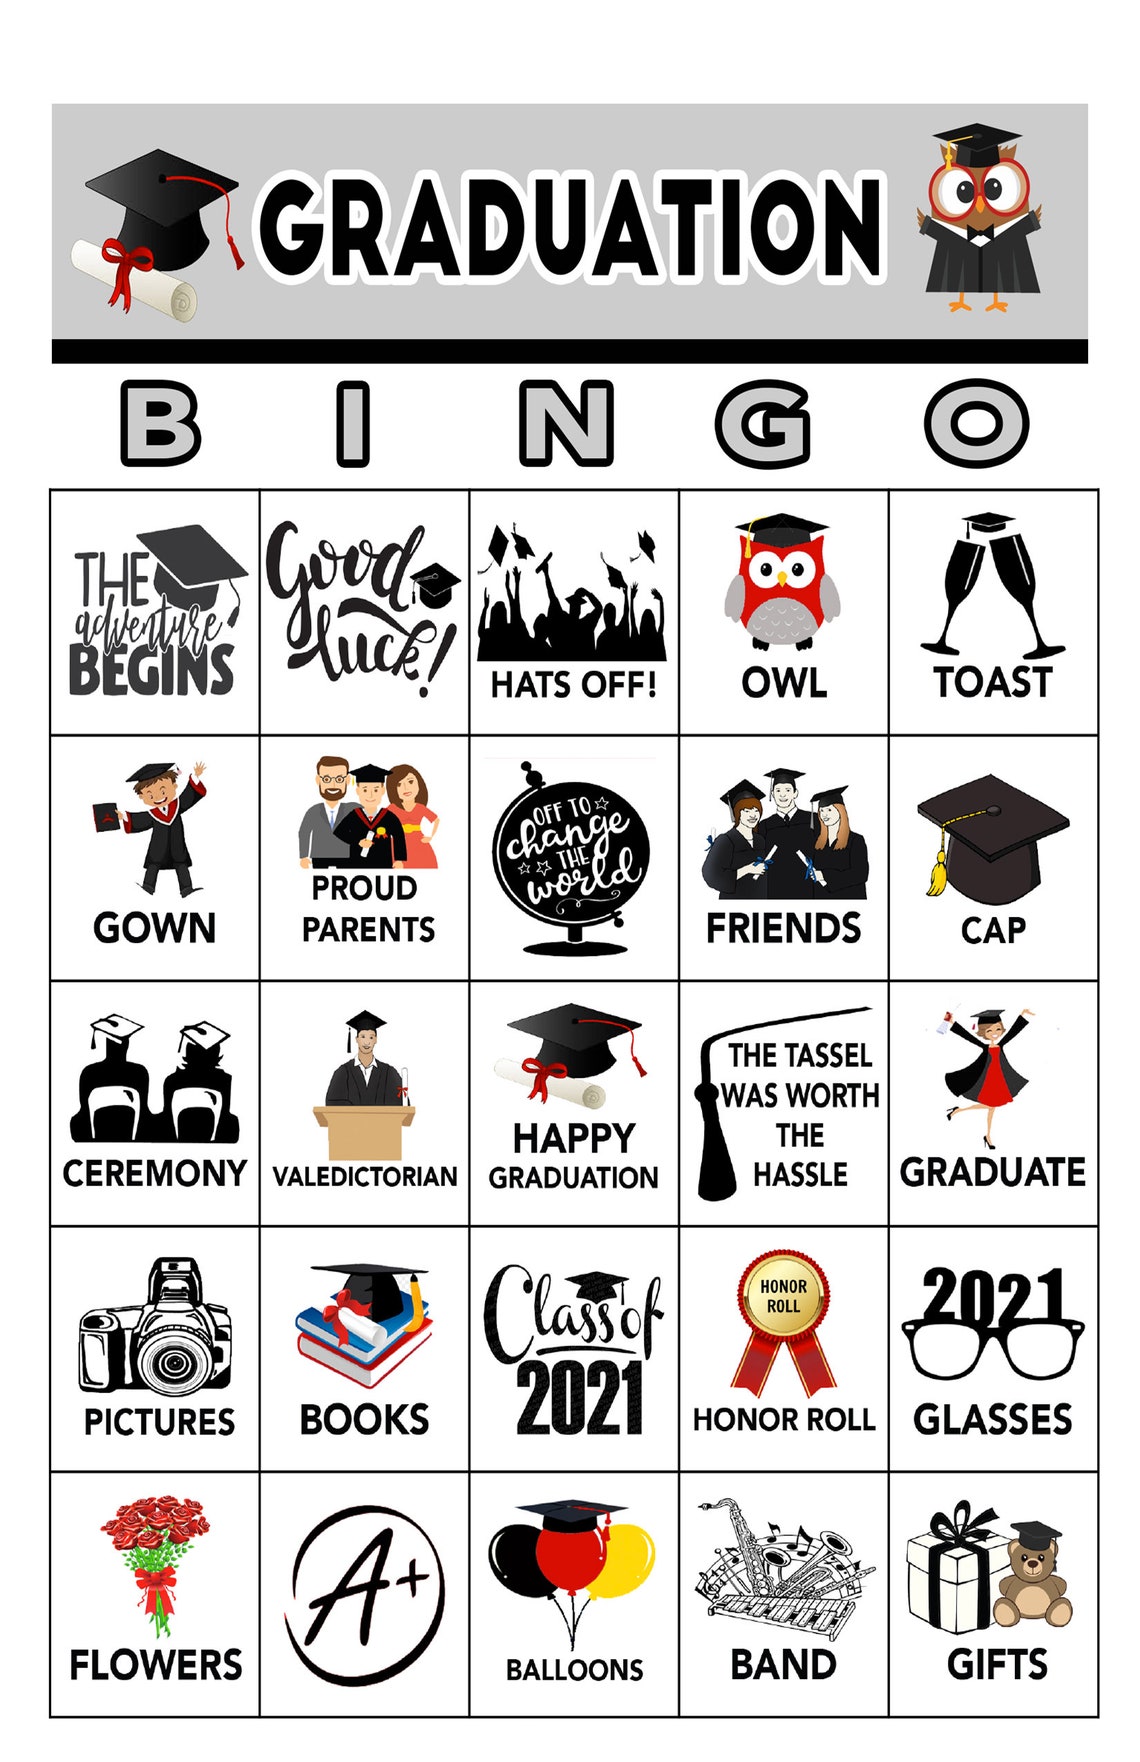 graduation-party-bingo-16-cards-download-bingo-games-etsy